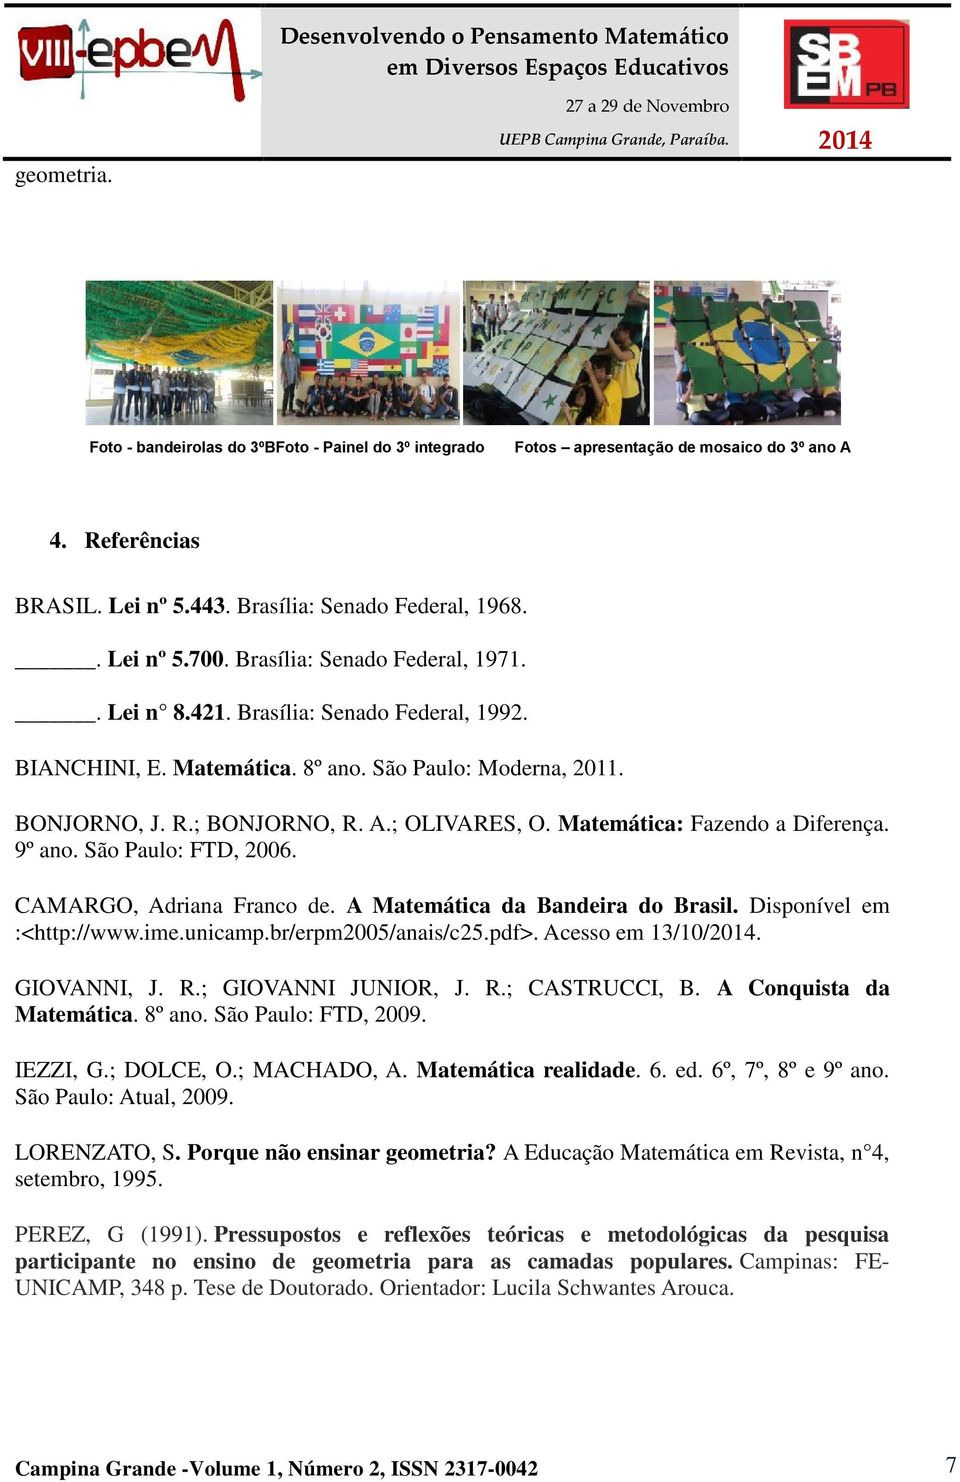 Matemática: Fazendo a Diferença. 9º ano. São Paulo: FTD, 2006. CAMARGO, Adriana Franco de. A Matemática da Bandeira do Brasil. Disponível em :<http://www.ime.unicamp.br/erpm2005/anais/c25.pdf>.